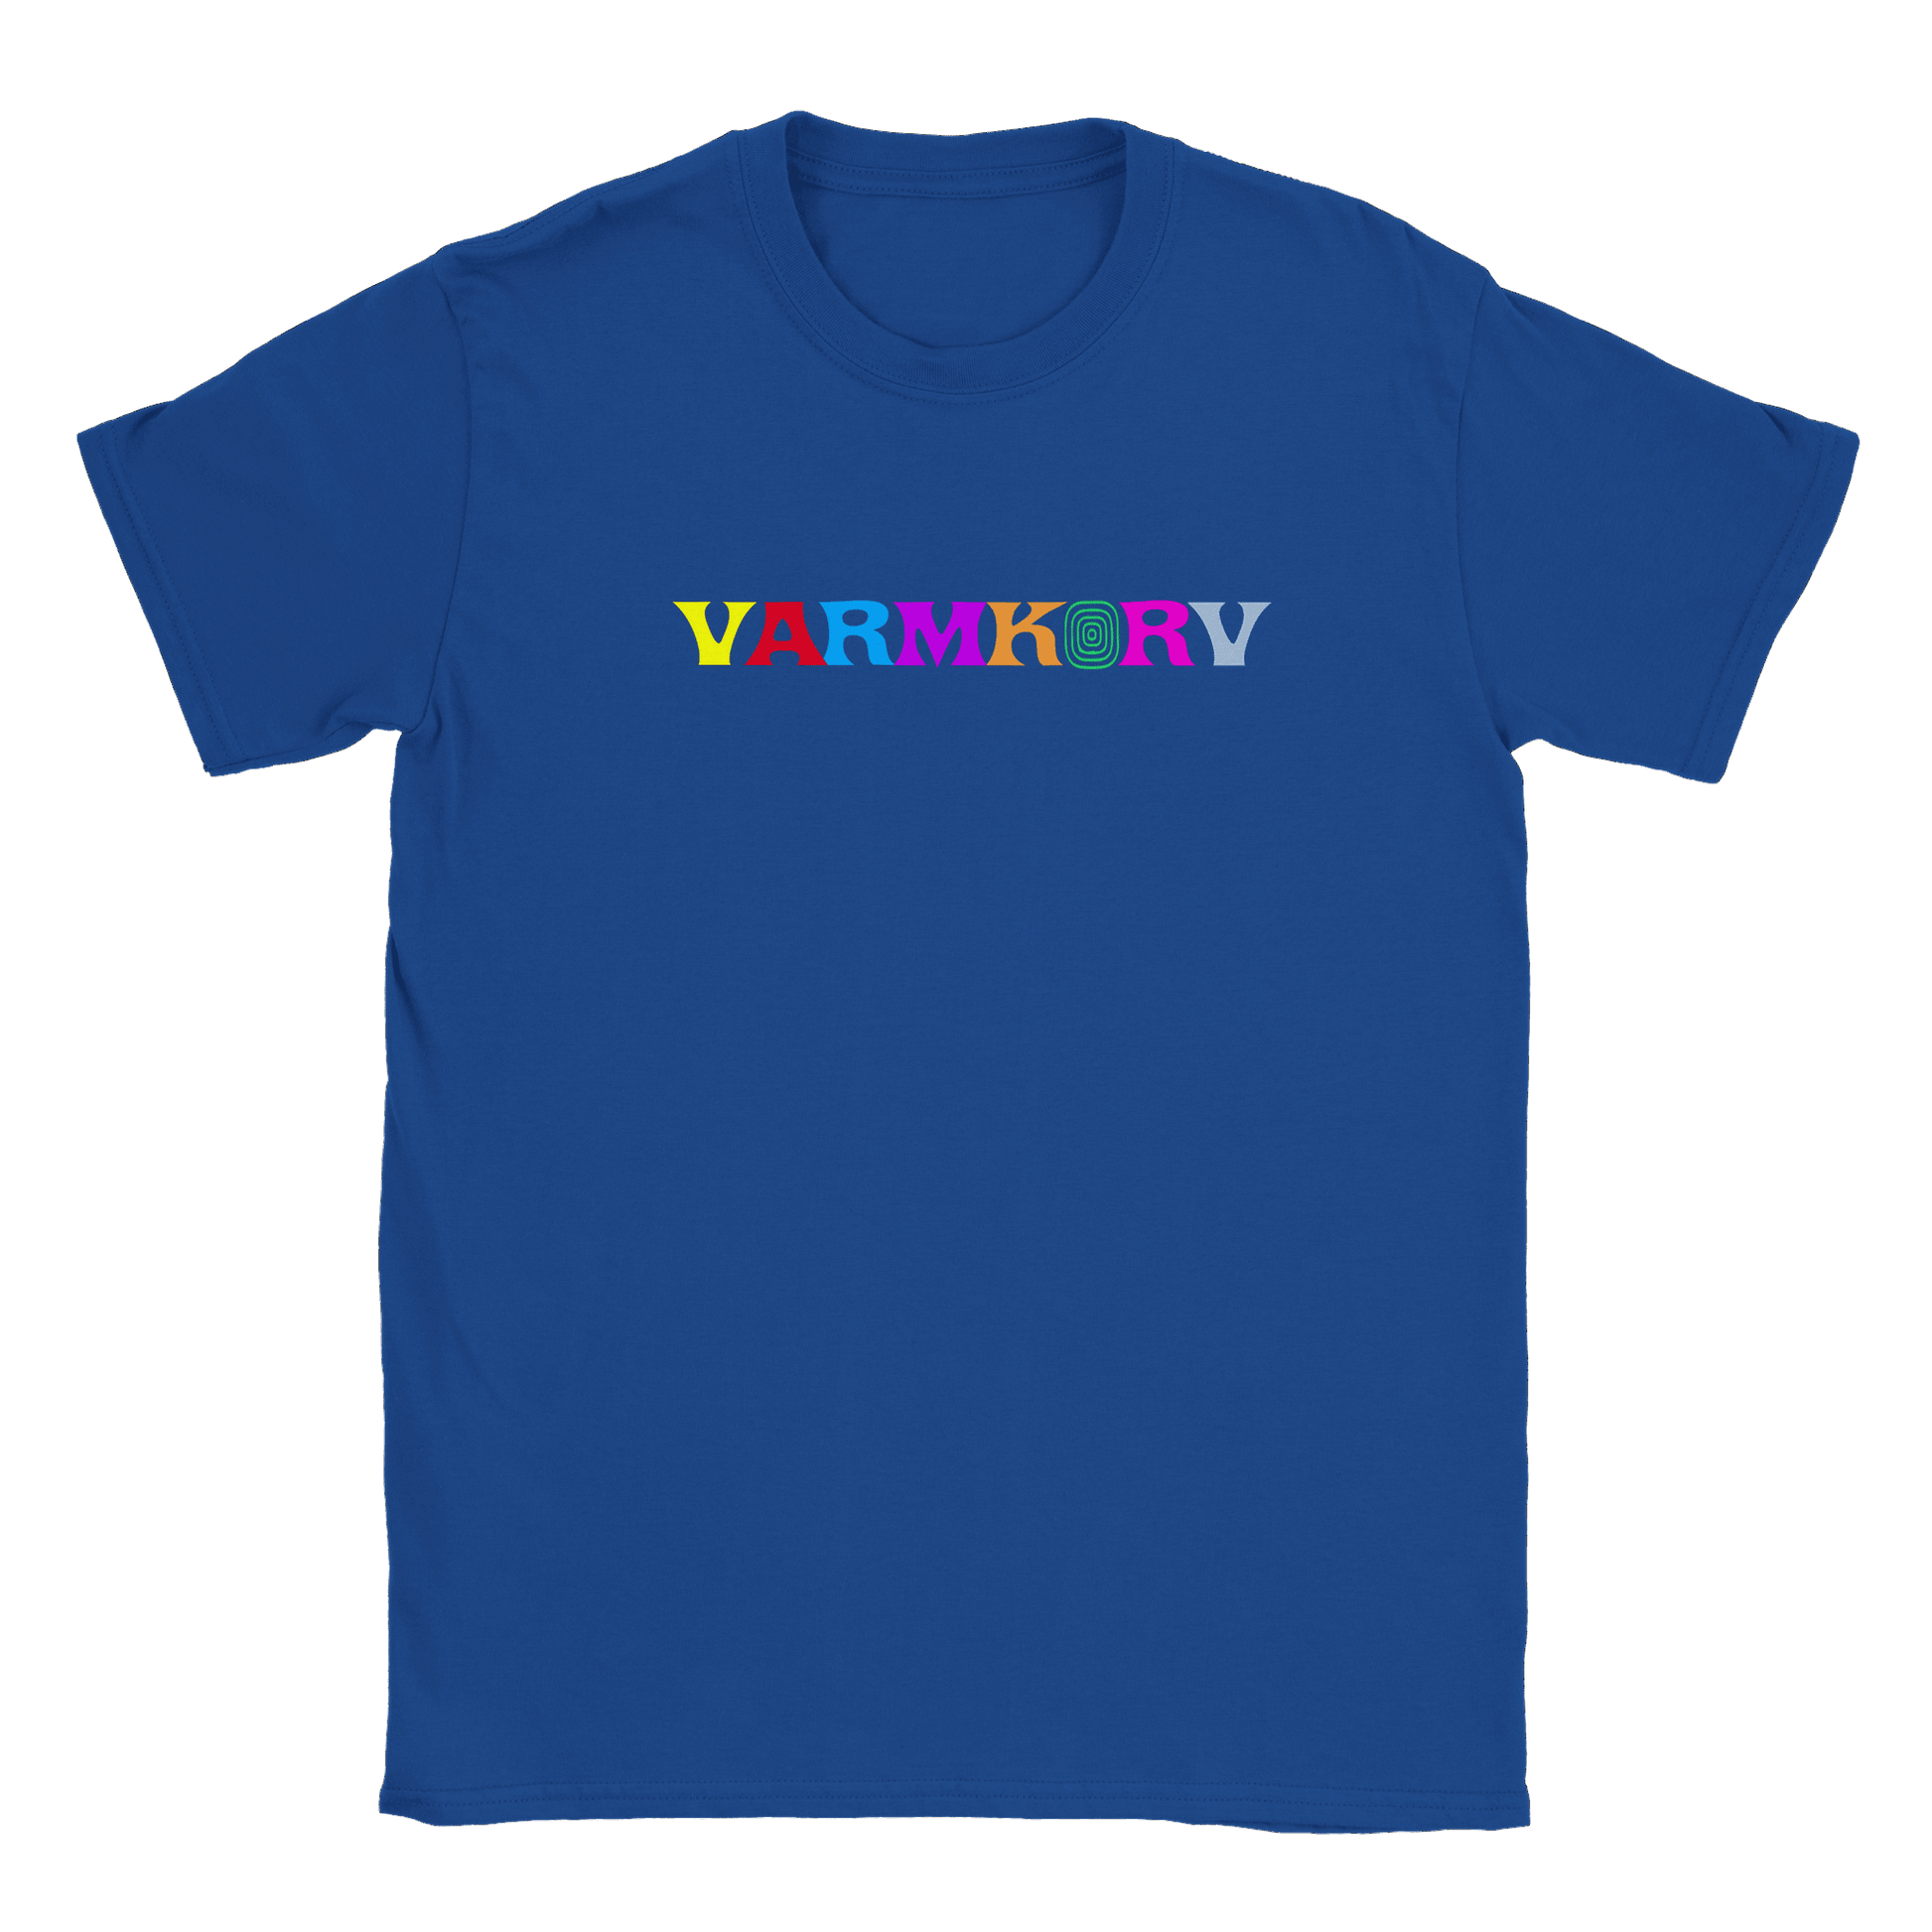 Varmkorv - T-shirt Royal